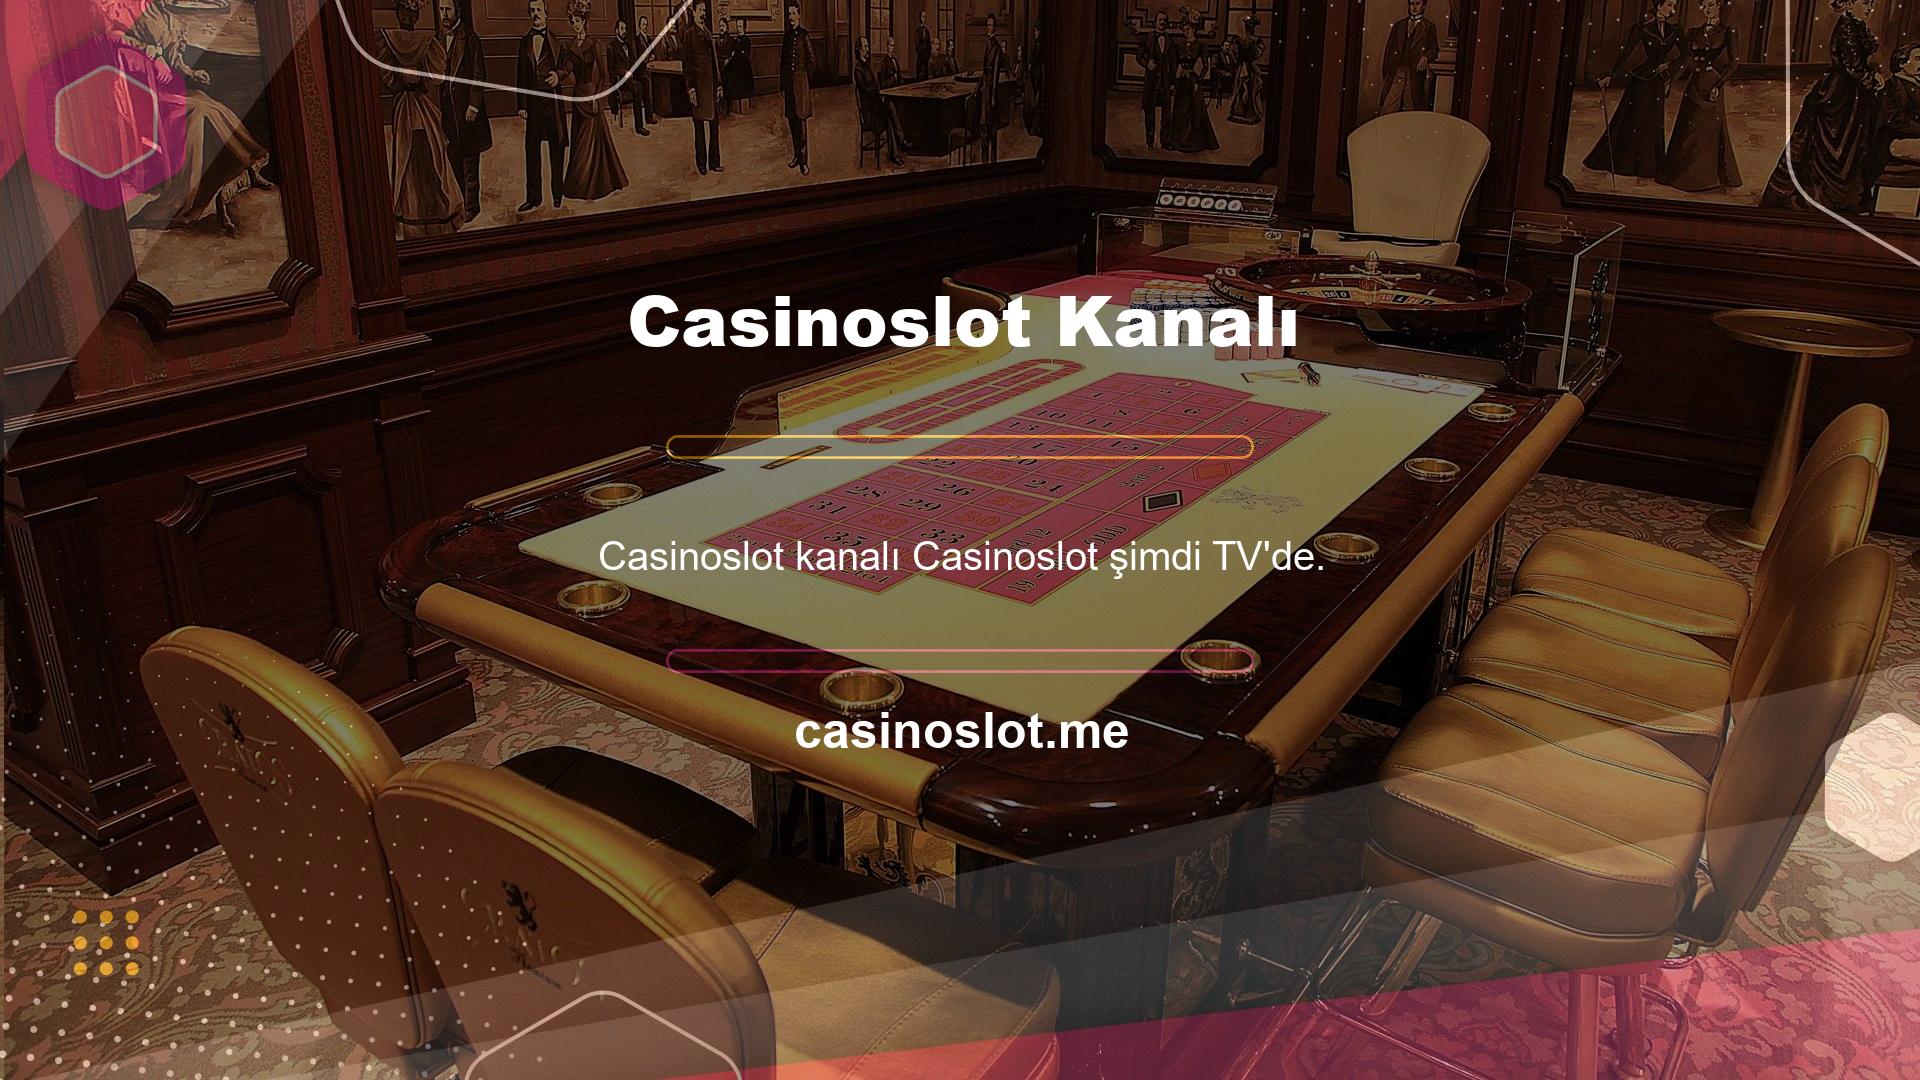 Ayrıca maçı ve Casinoslot kanalını canlı olarak izleyebilirsiniz